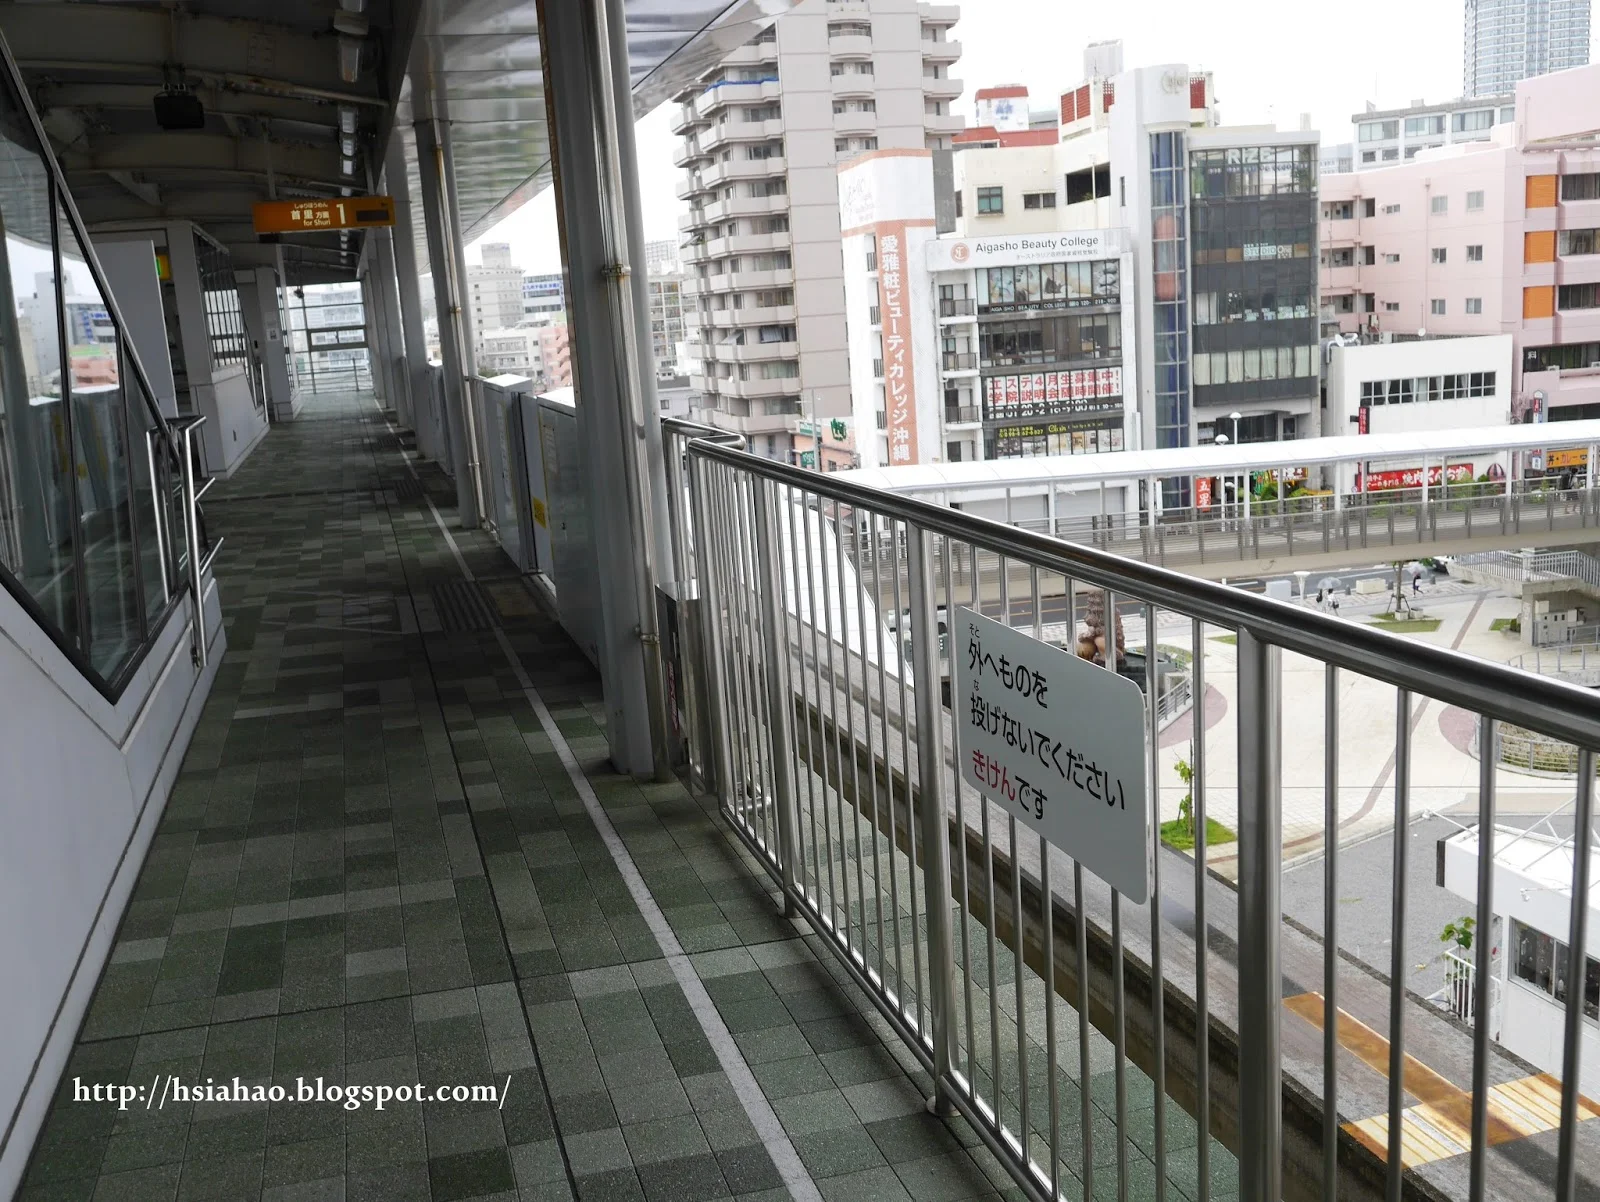 沖繩-電車交通-單軌電車-電車站-月台-自由行-旅遊-旅行-Okinawa-yui-rail- transport-train